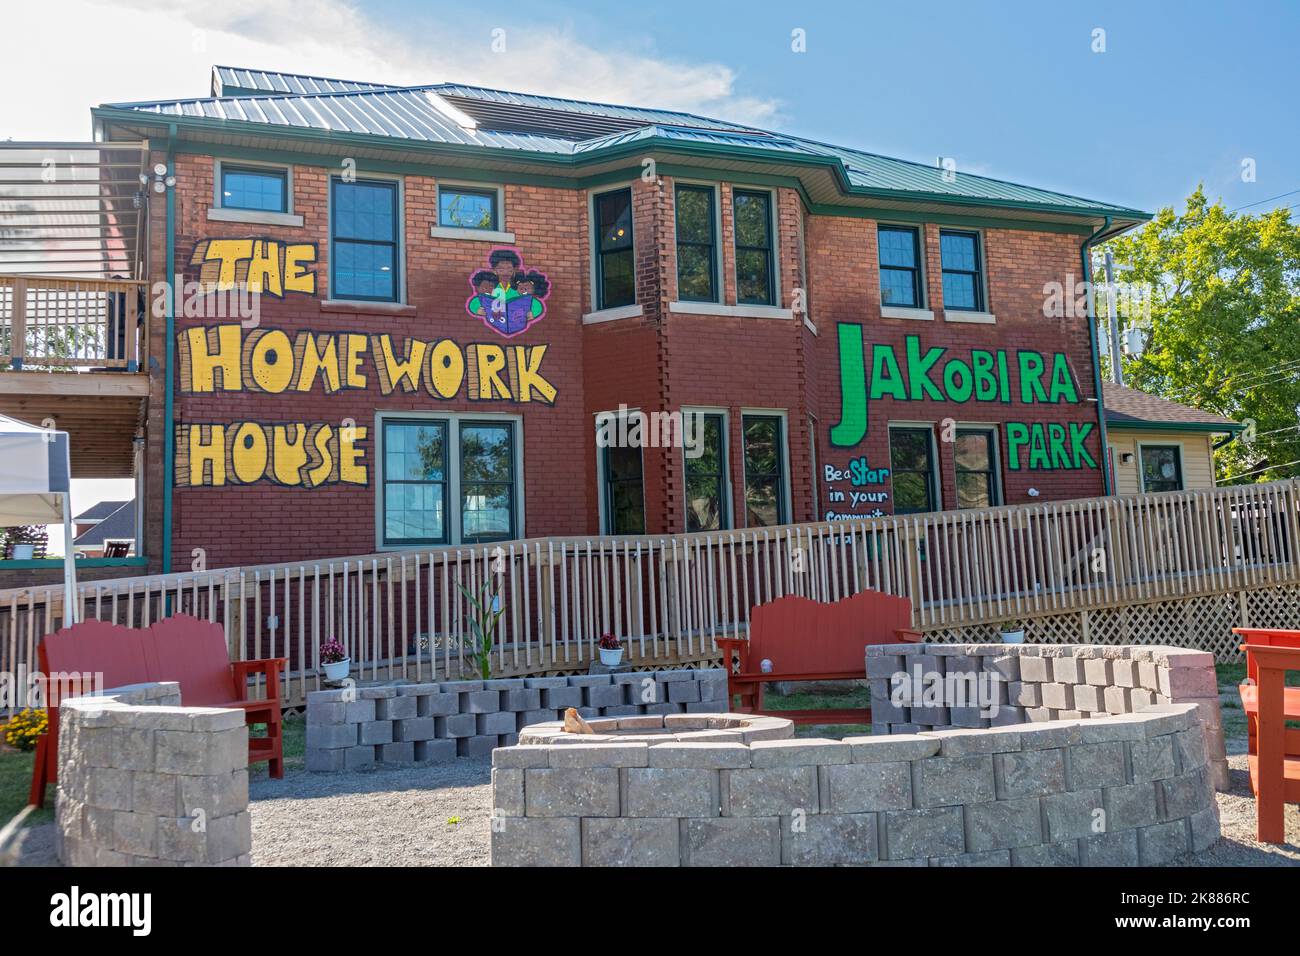 Highland Park, Michigan - The Homework House hilft Studenten in dieser einkommensschwachen Gemeinschaft mit Nachhilfe, Mahlzeiten, Hausaufgabenhilfe und GED-Tests. Es hat Stockfoto